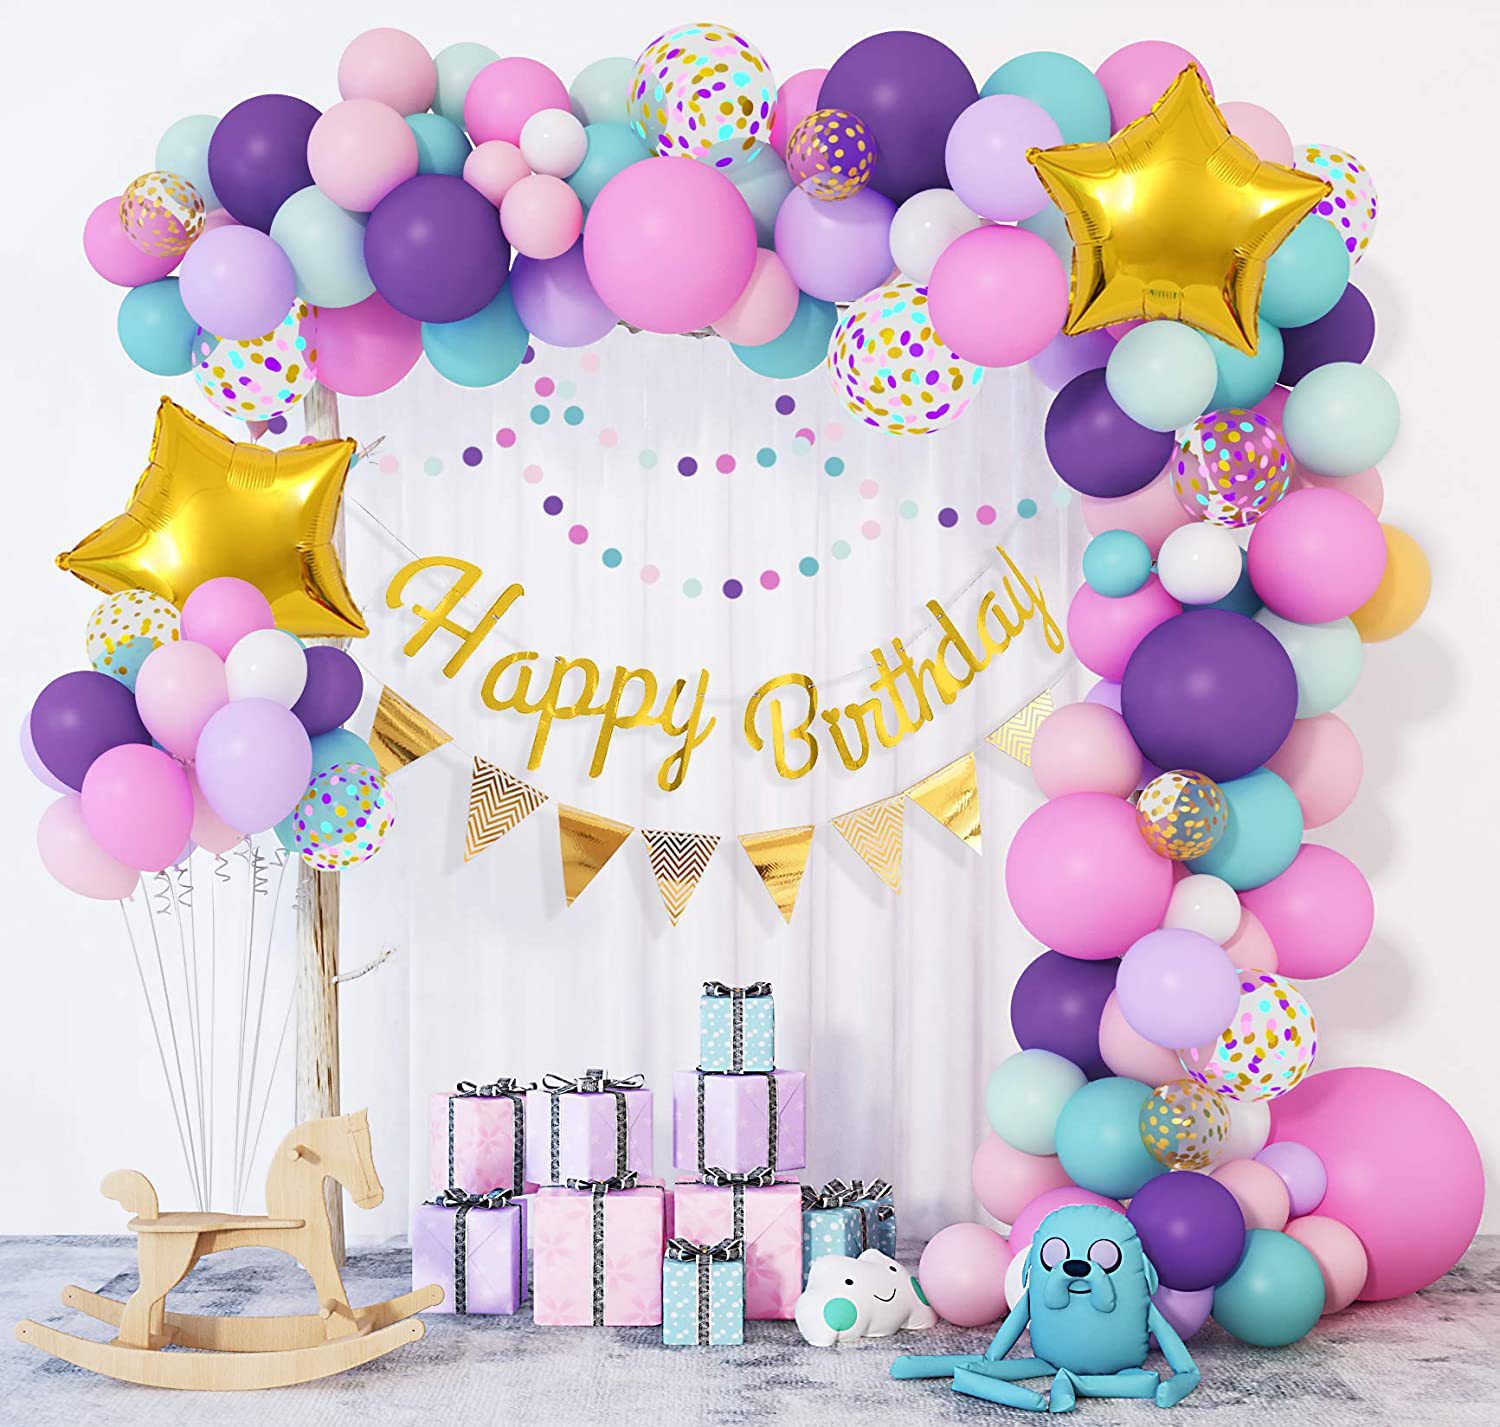 马卡龙彩色生日快乐气球套装婚礼新房派对装饰场景布置气球链拱门